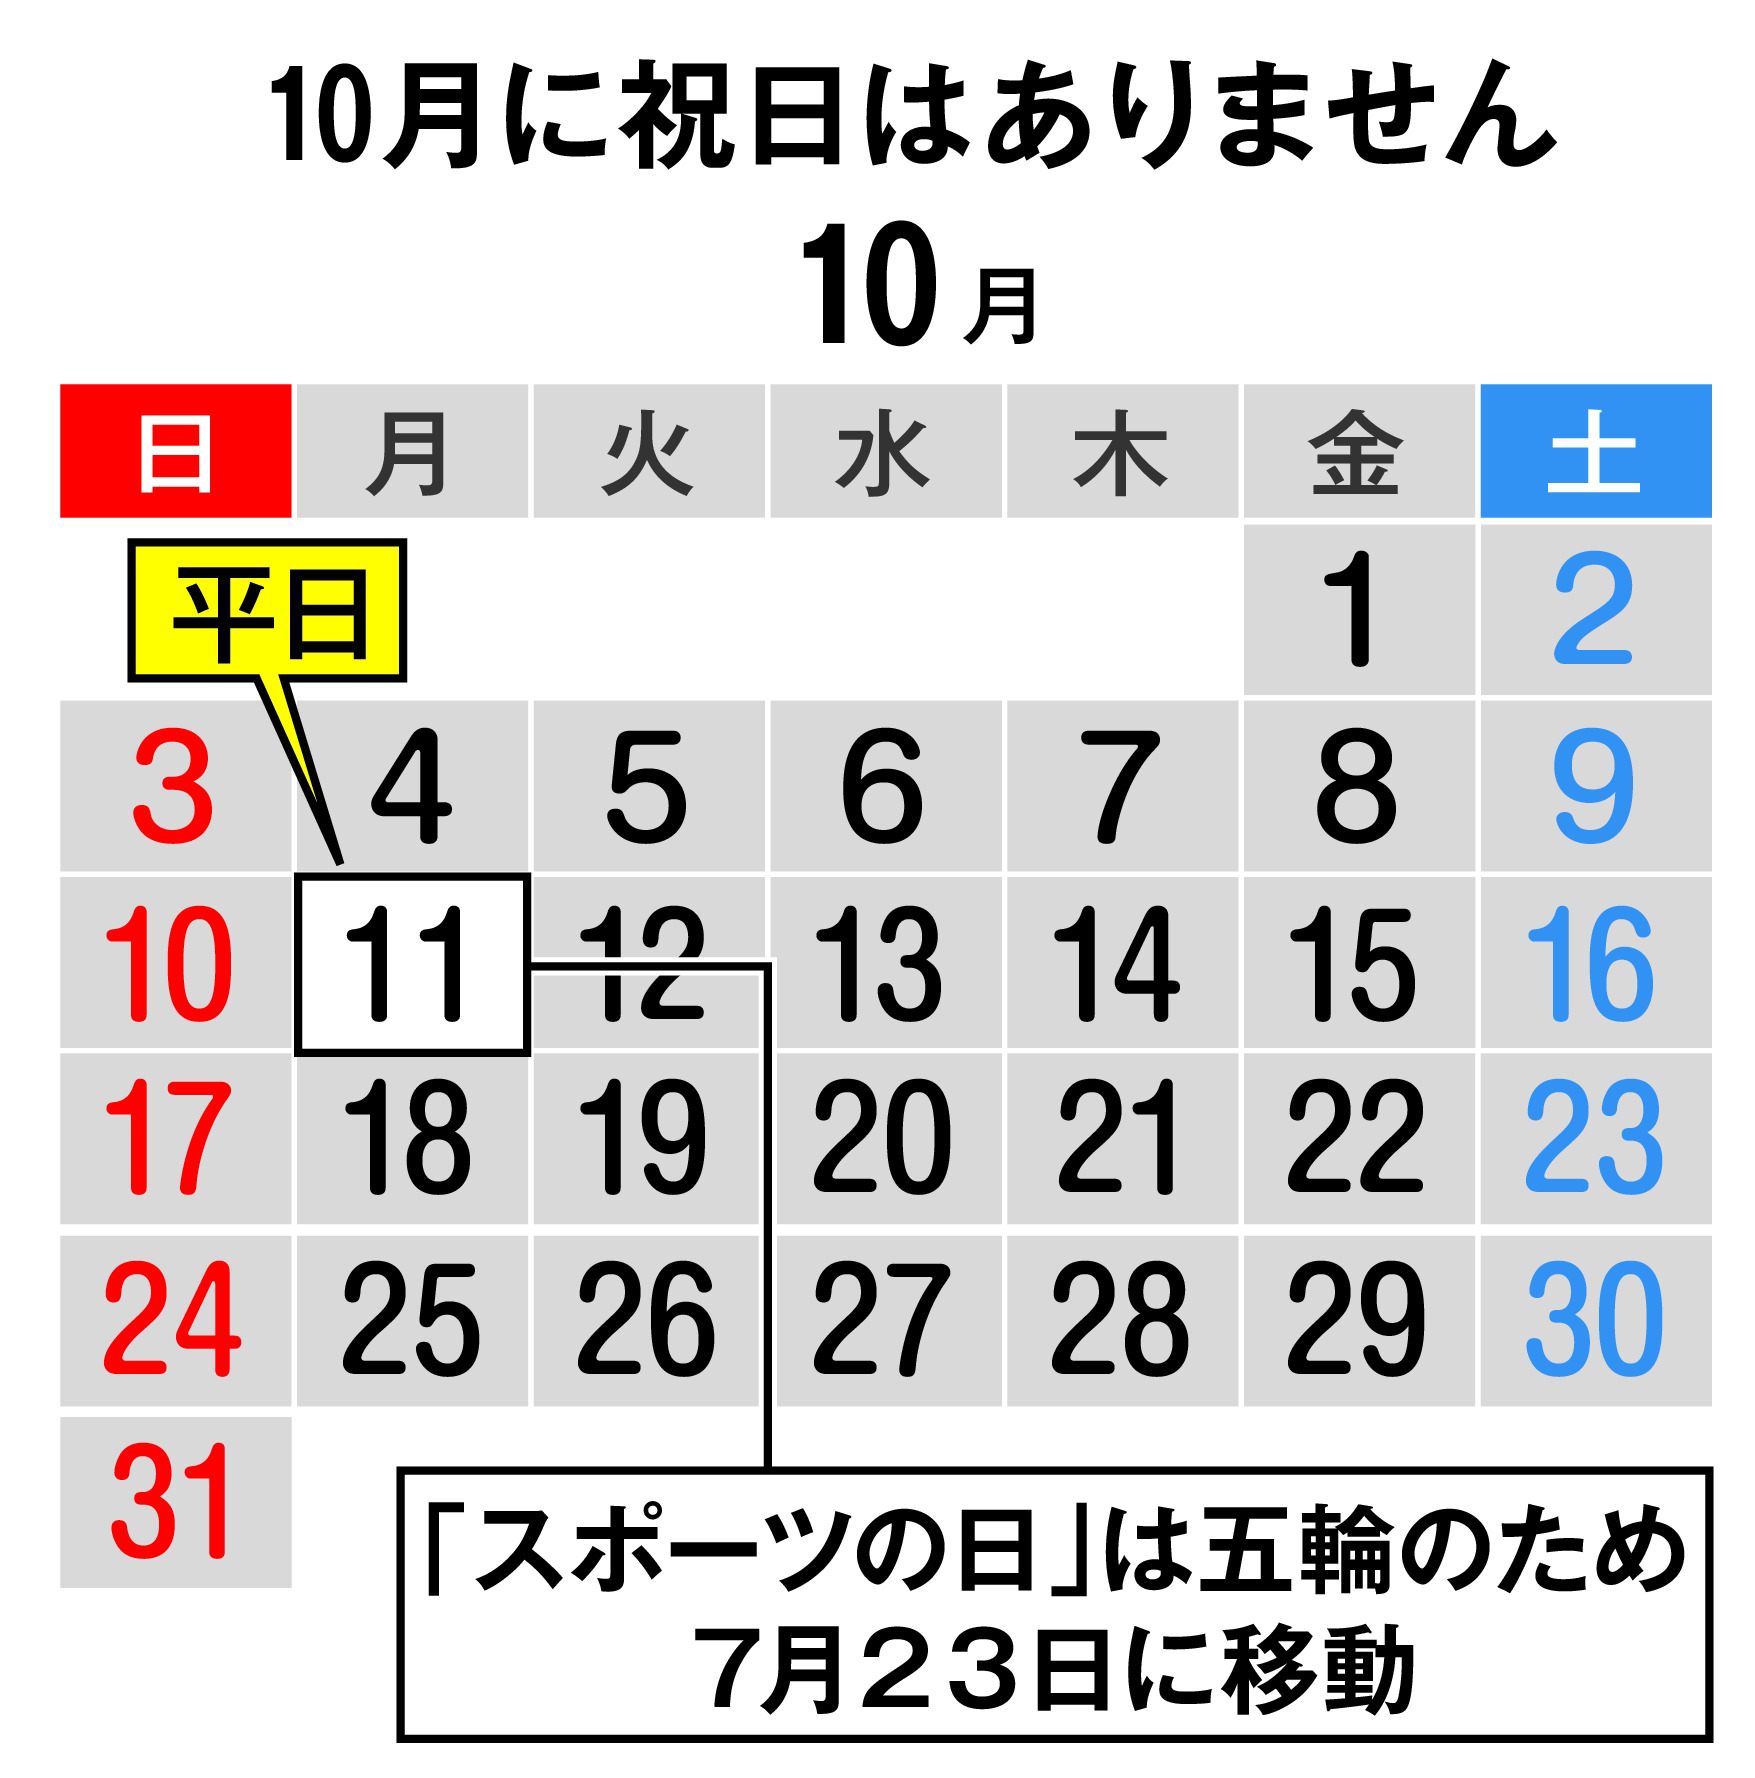 １０月１１日は 平日 です 祝日移動されていないカレンダーも 産経ニュース